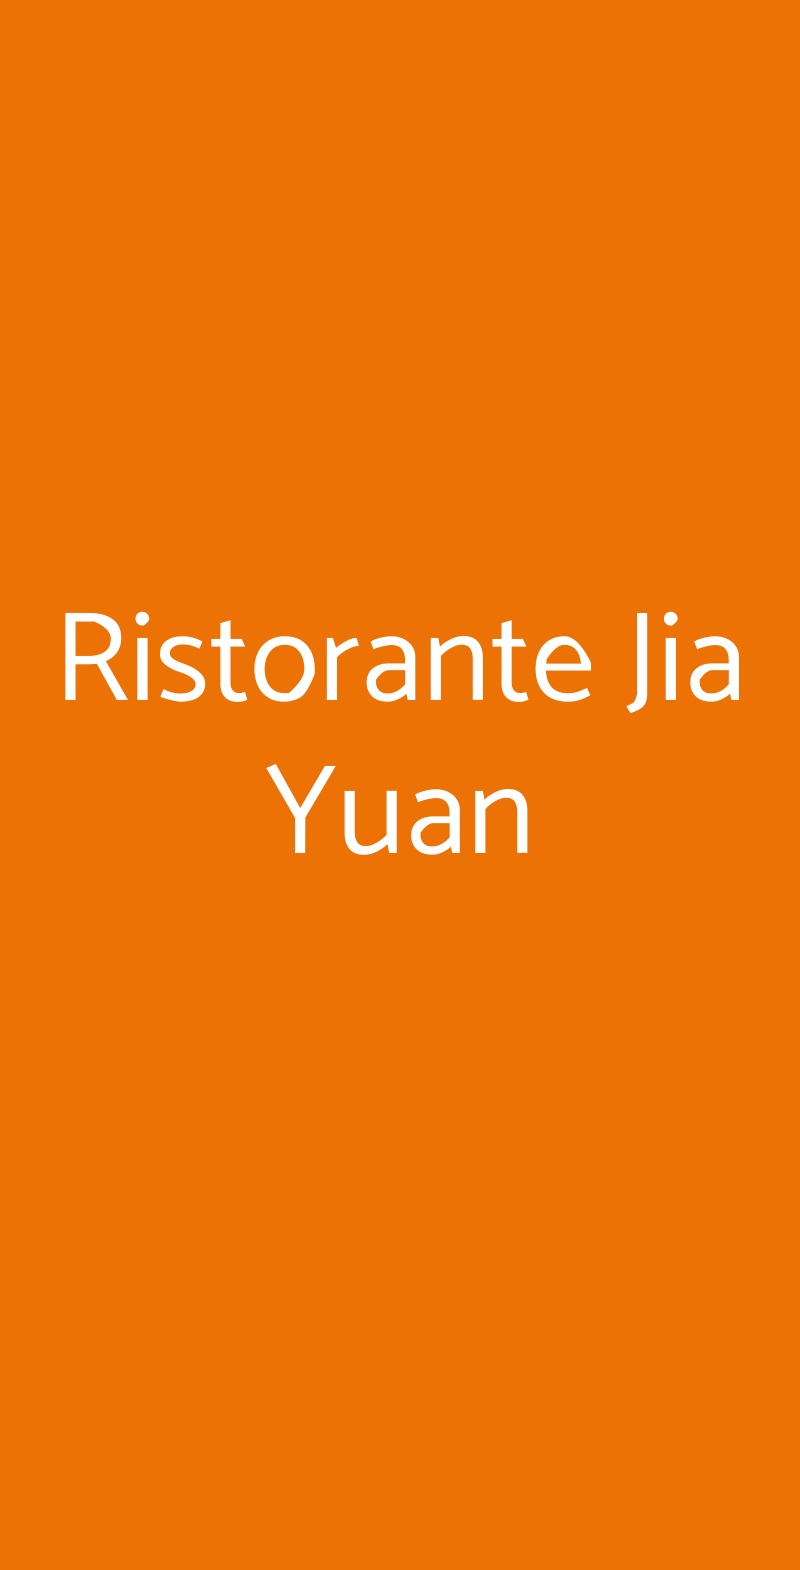 Ristorante Jia Yuan Torino menù 1 pagina